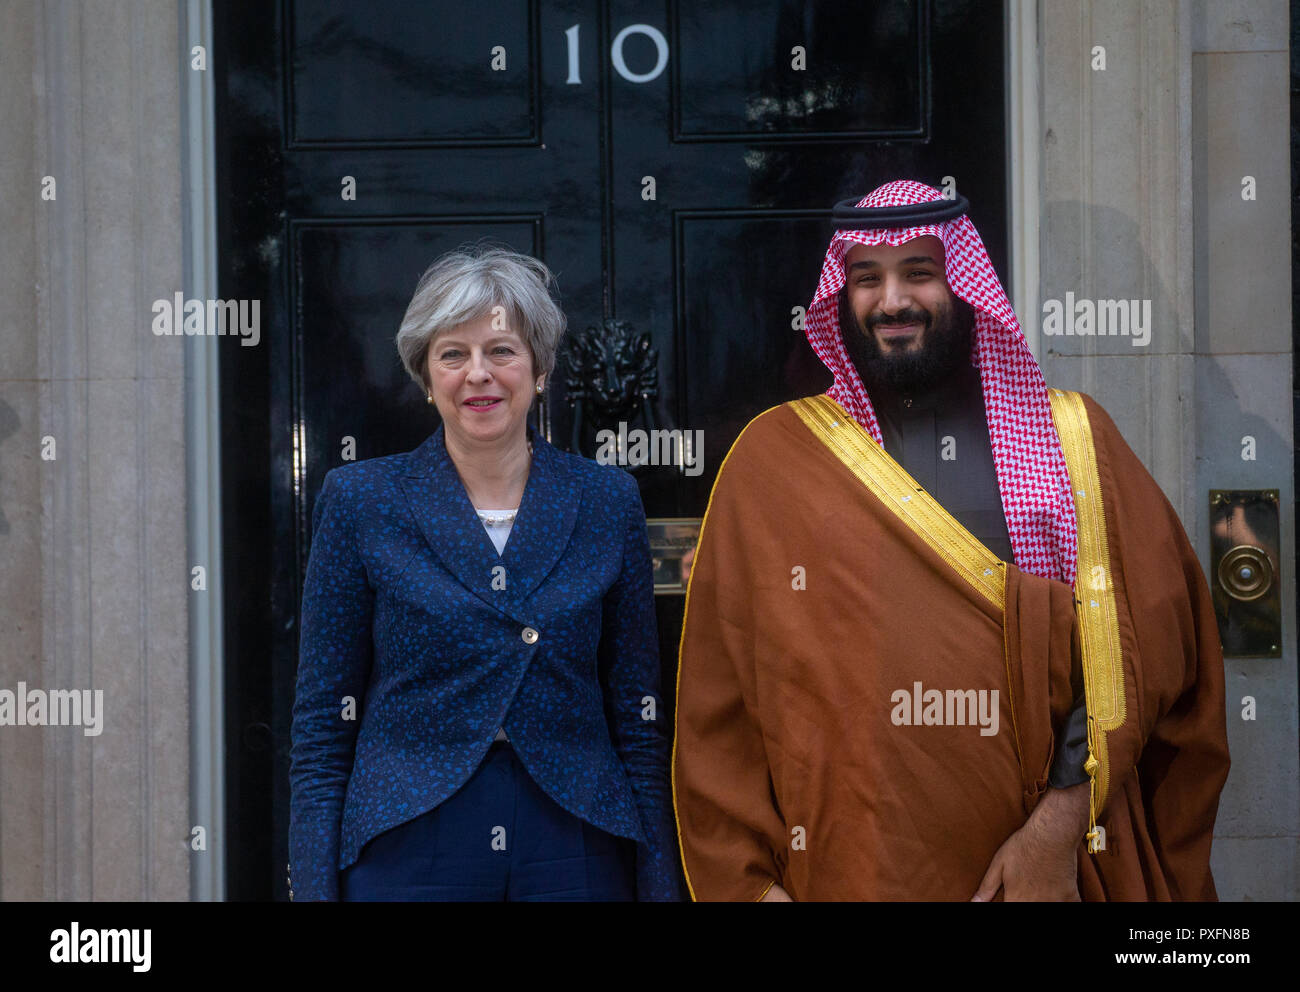 Crown Prince Mohammad Bin Salman, der Kronprinz von Saudi-arabien und Sohn von König Salman, besuche Theresa May in der Downing Street. Stockfoto